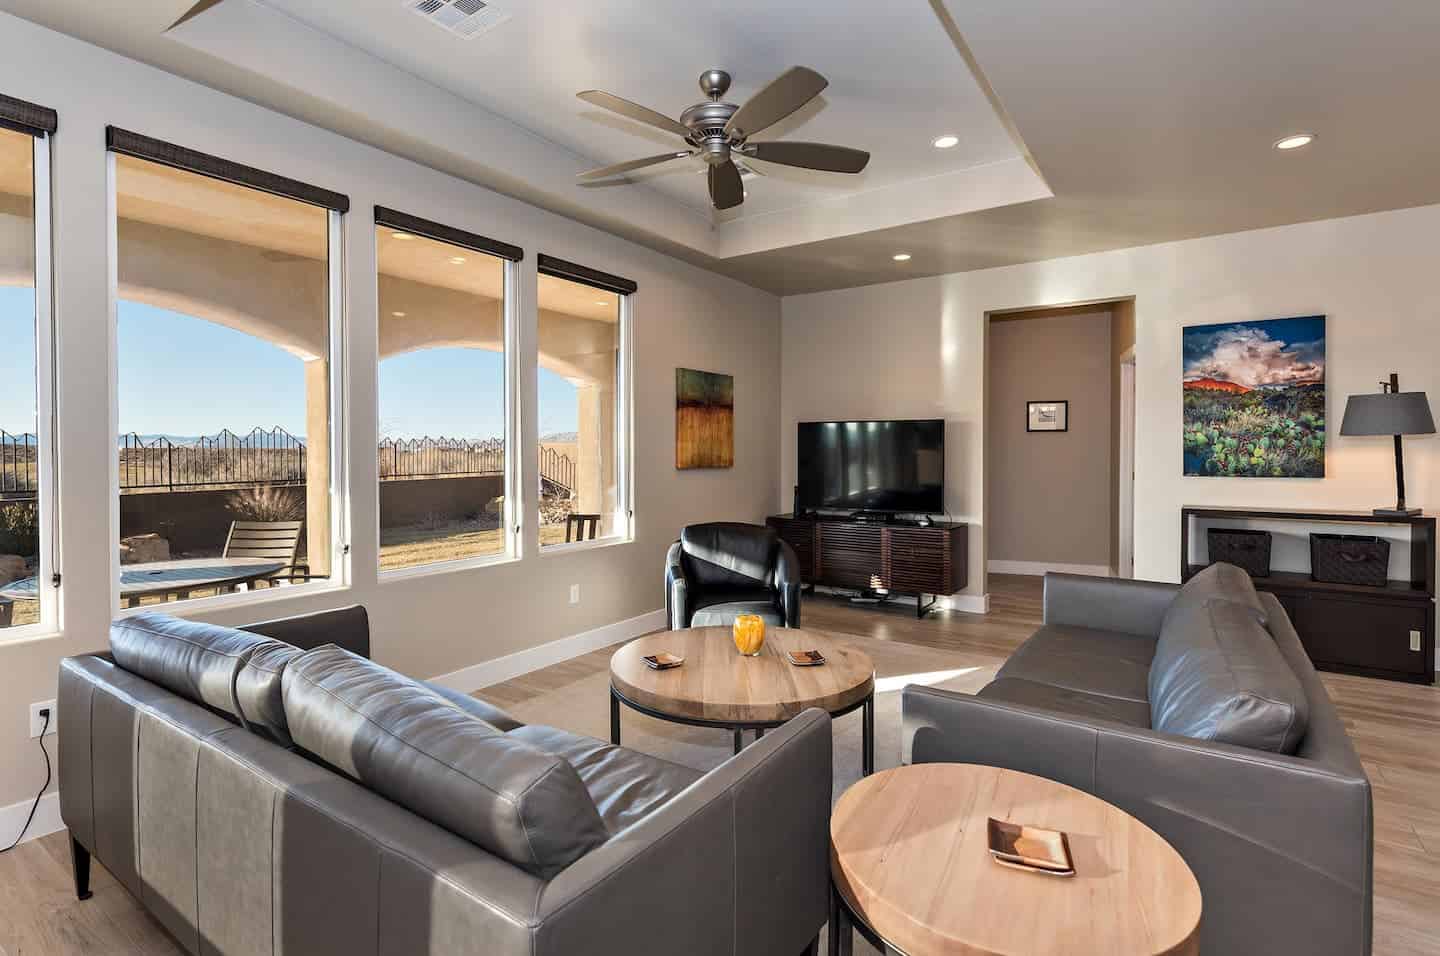 Image of Airbnb rental in St. George, Utah